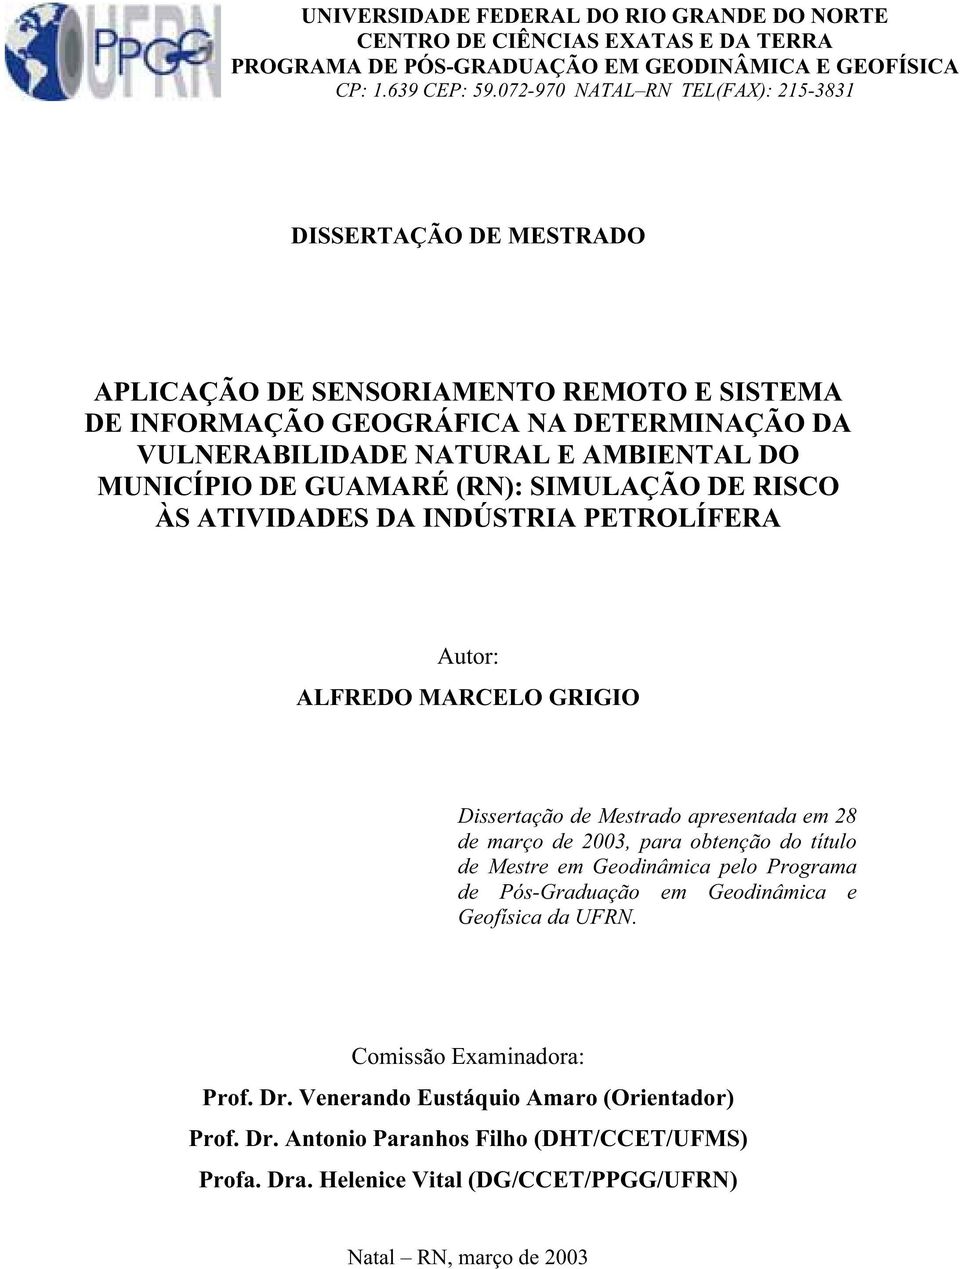 GUAMARÉ (RN): SIMULAÇÃO DE RISCO ÀS ATIVIDADES DA INDÚSTRIA PETROLÍFERA Autor: ALFREDO MARCELO GRIGIO Dissertação de Mestrado apresentada em 28 de março de 2003, para obtenção do título de Mestre em